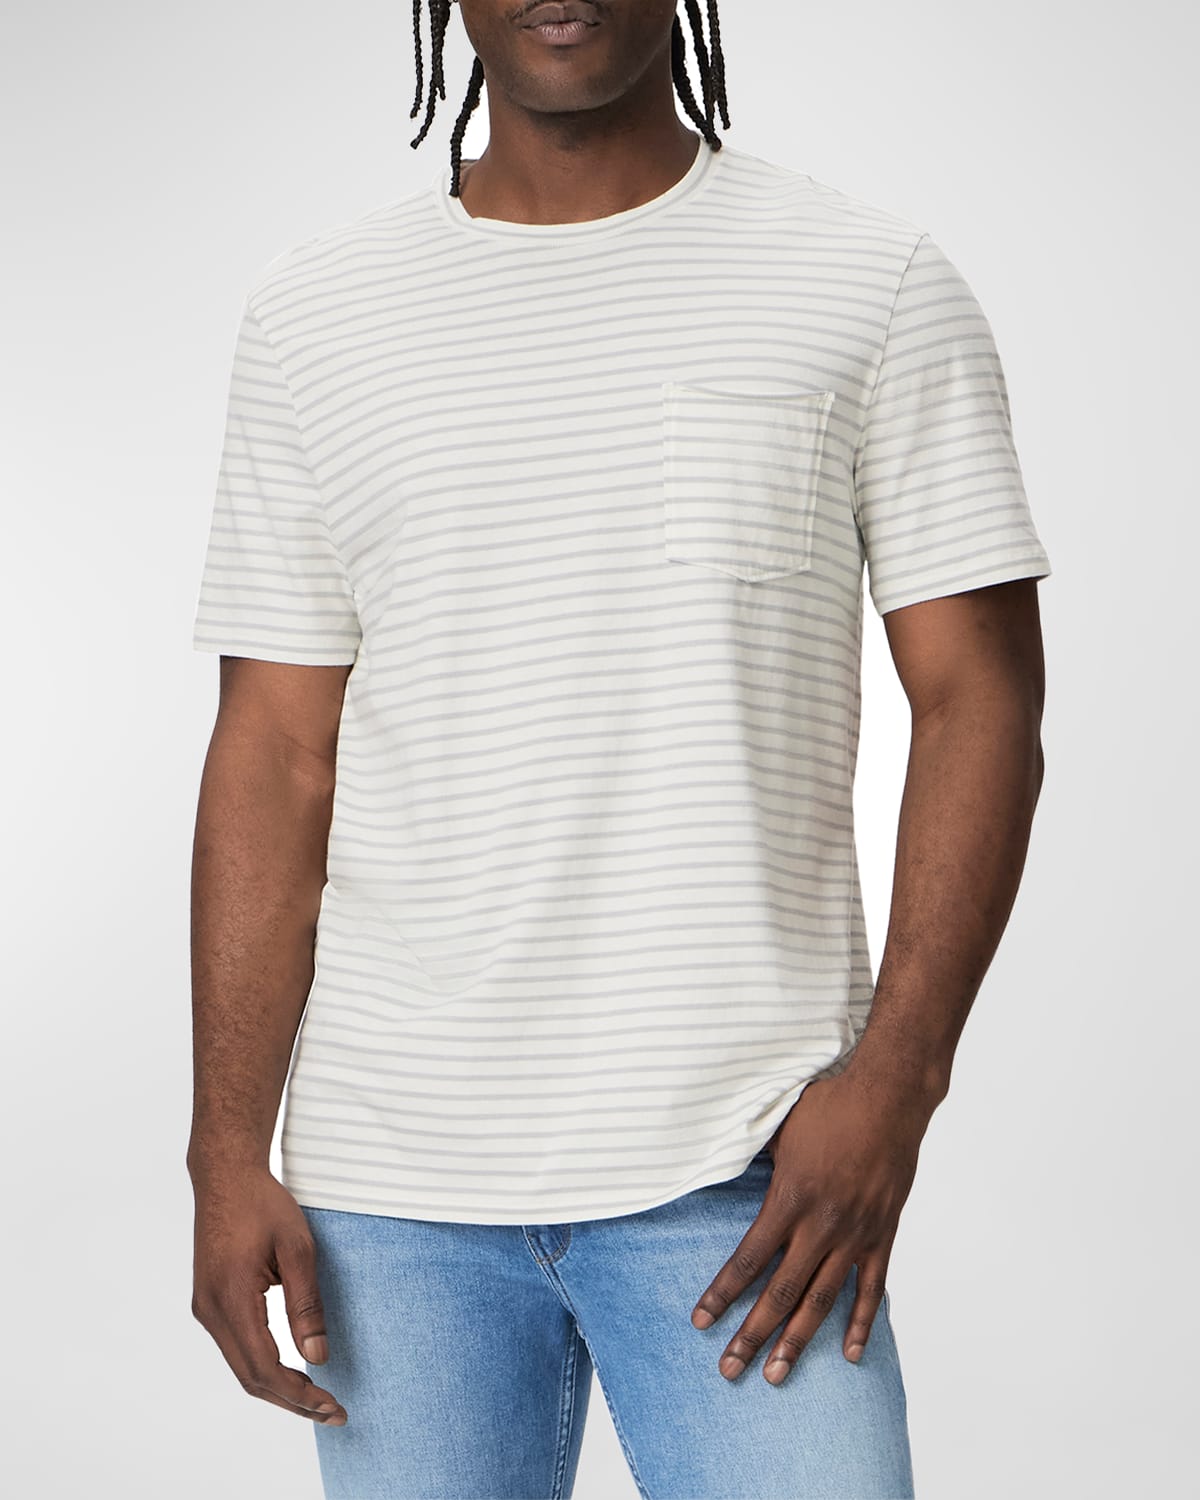 Men's Ramirez Striped T-Shirt